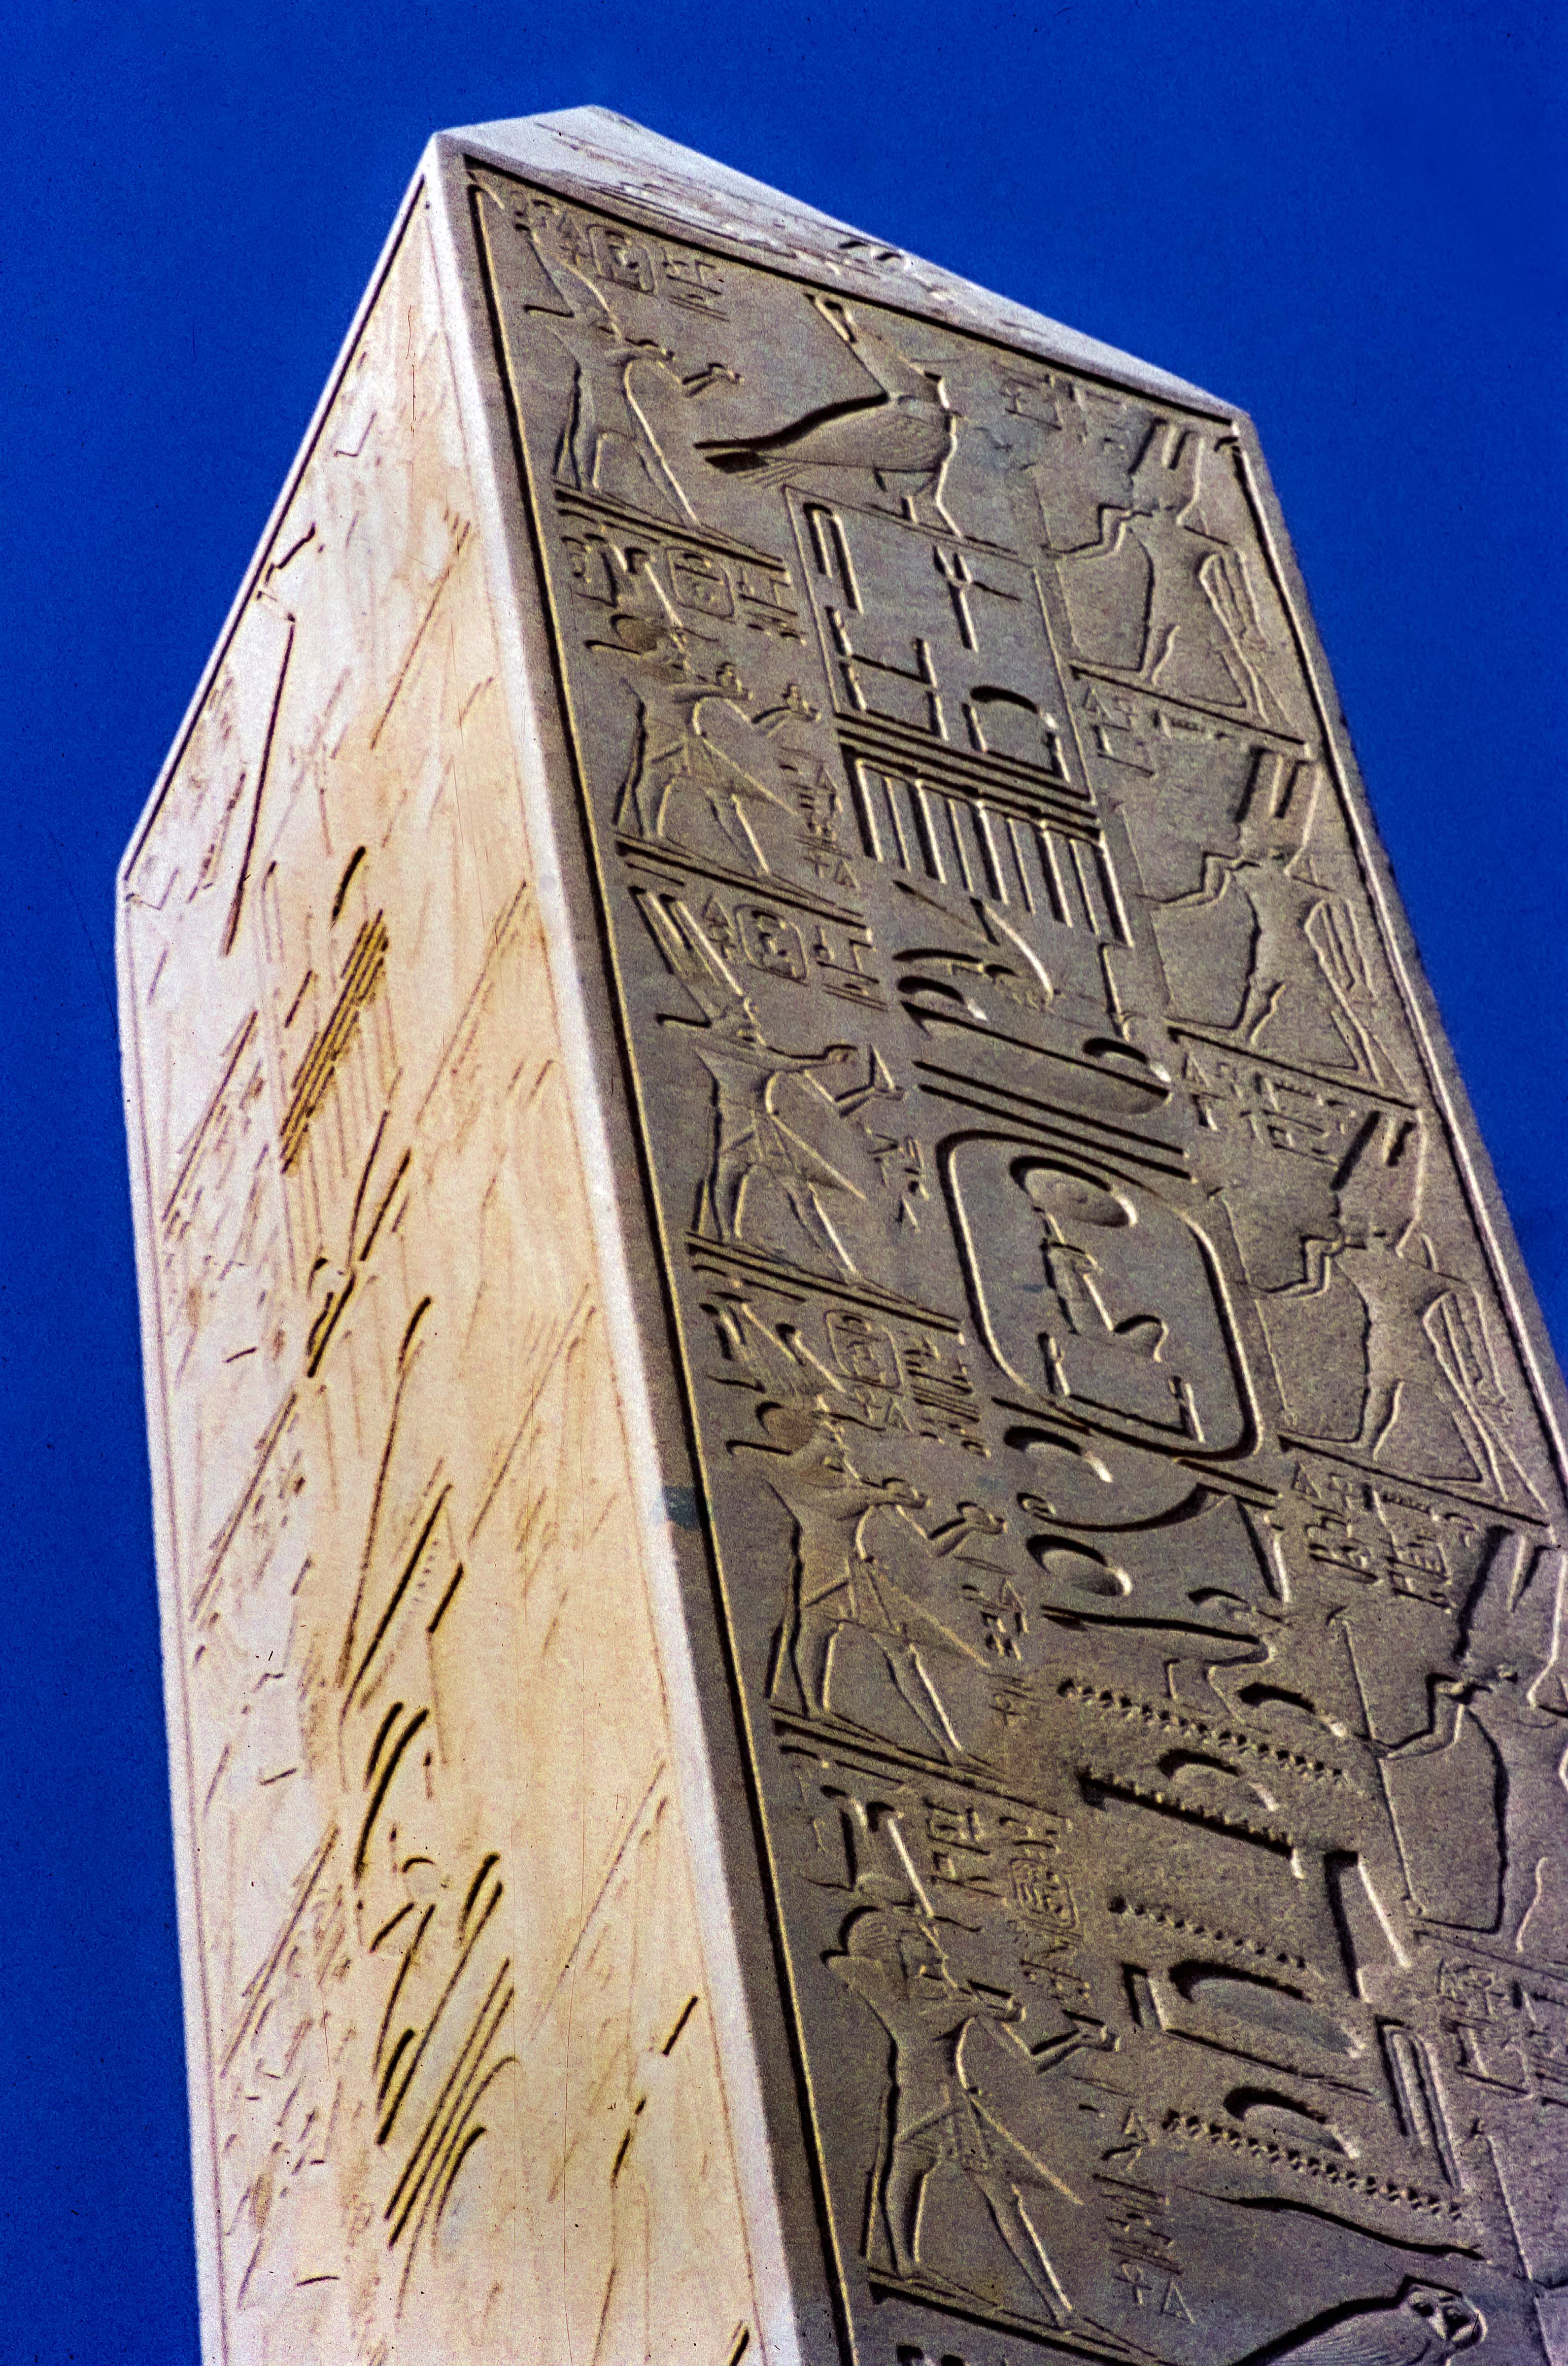 Egypt, Luxor Obelisk, 1984